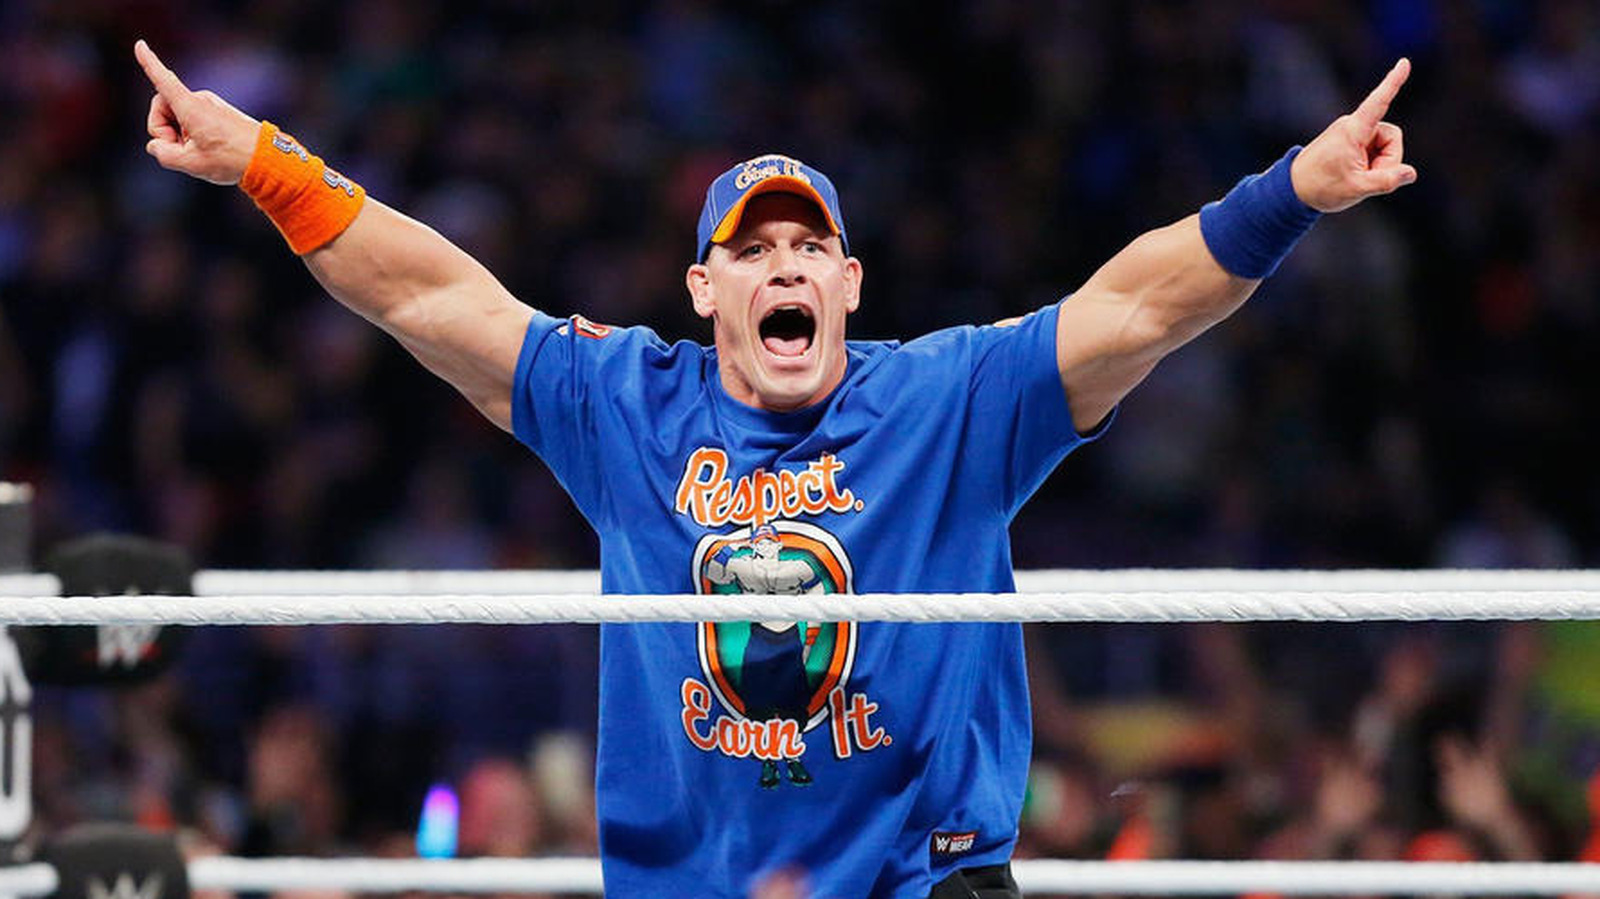 John Cena estará en WWE SmackDown más de lo esperado: consulte el calendario de apariciones actualizado